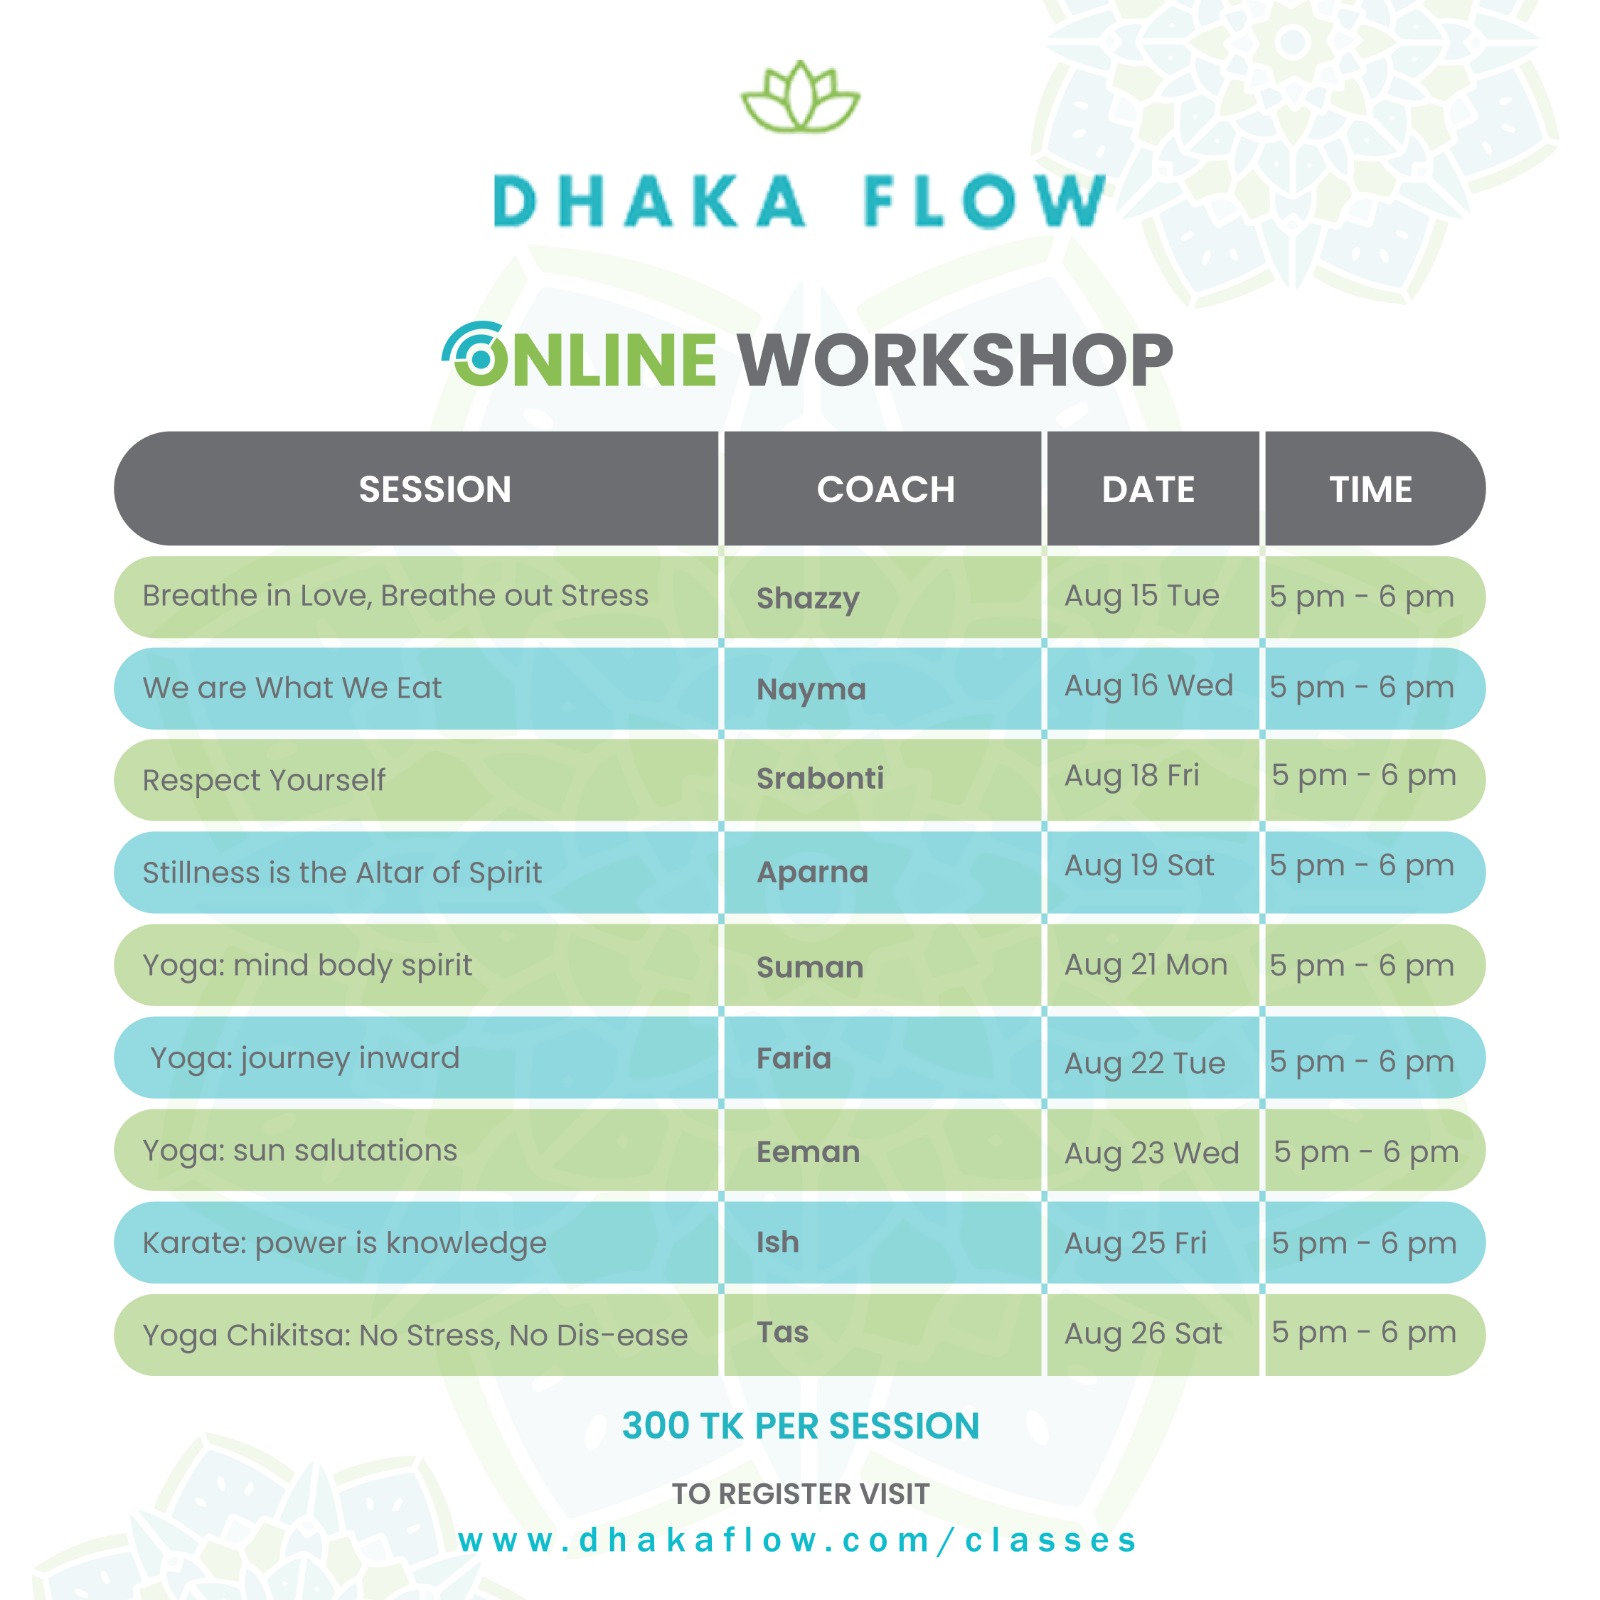 Dhaka Flow online classes